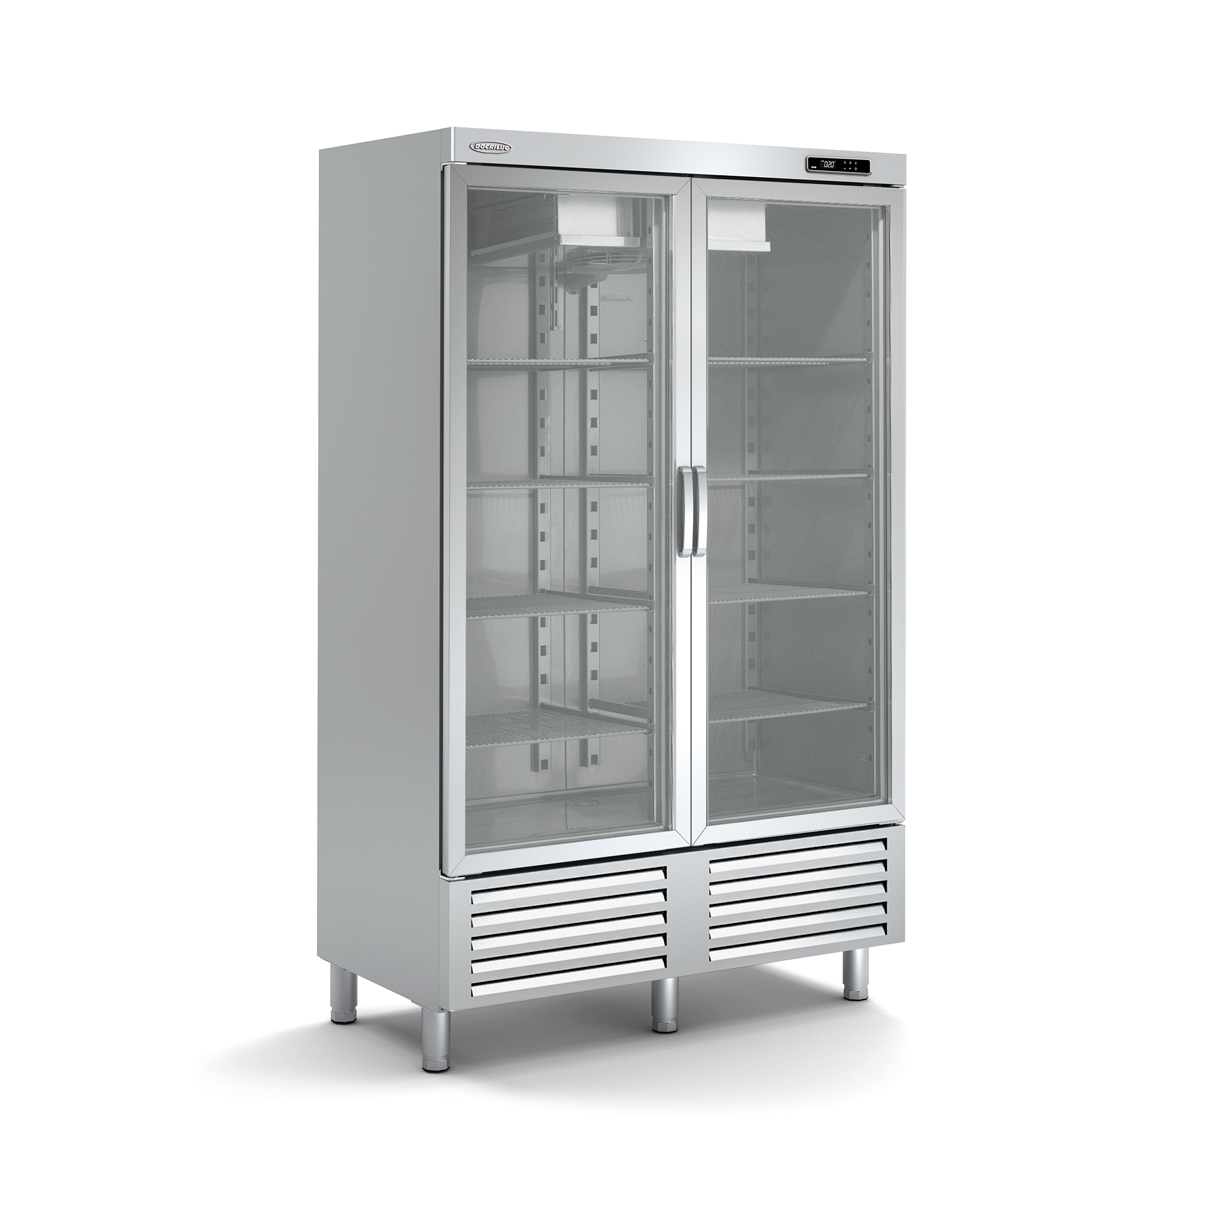 Snack Freezing Cabinet ARC-125-2-E